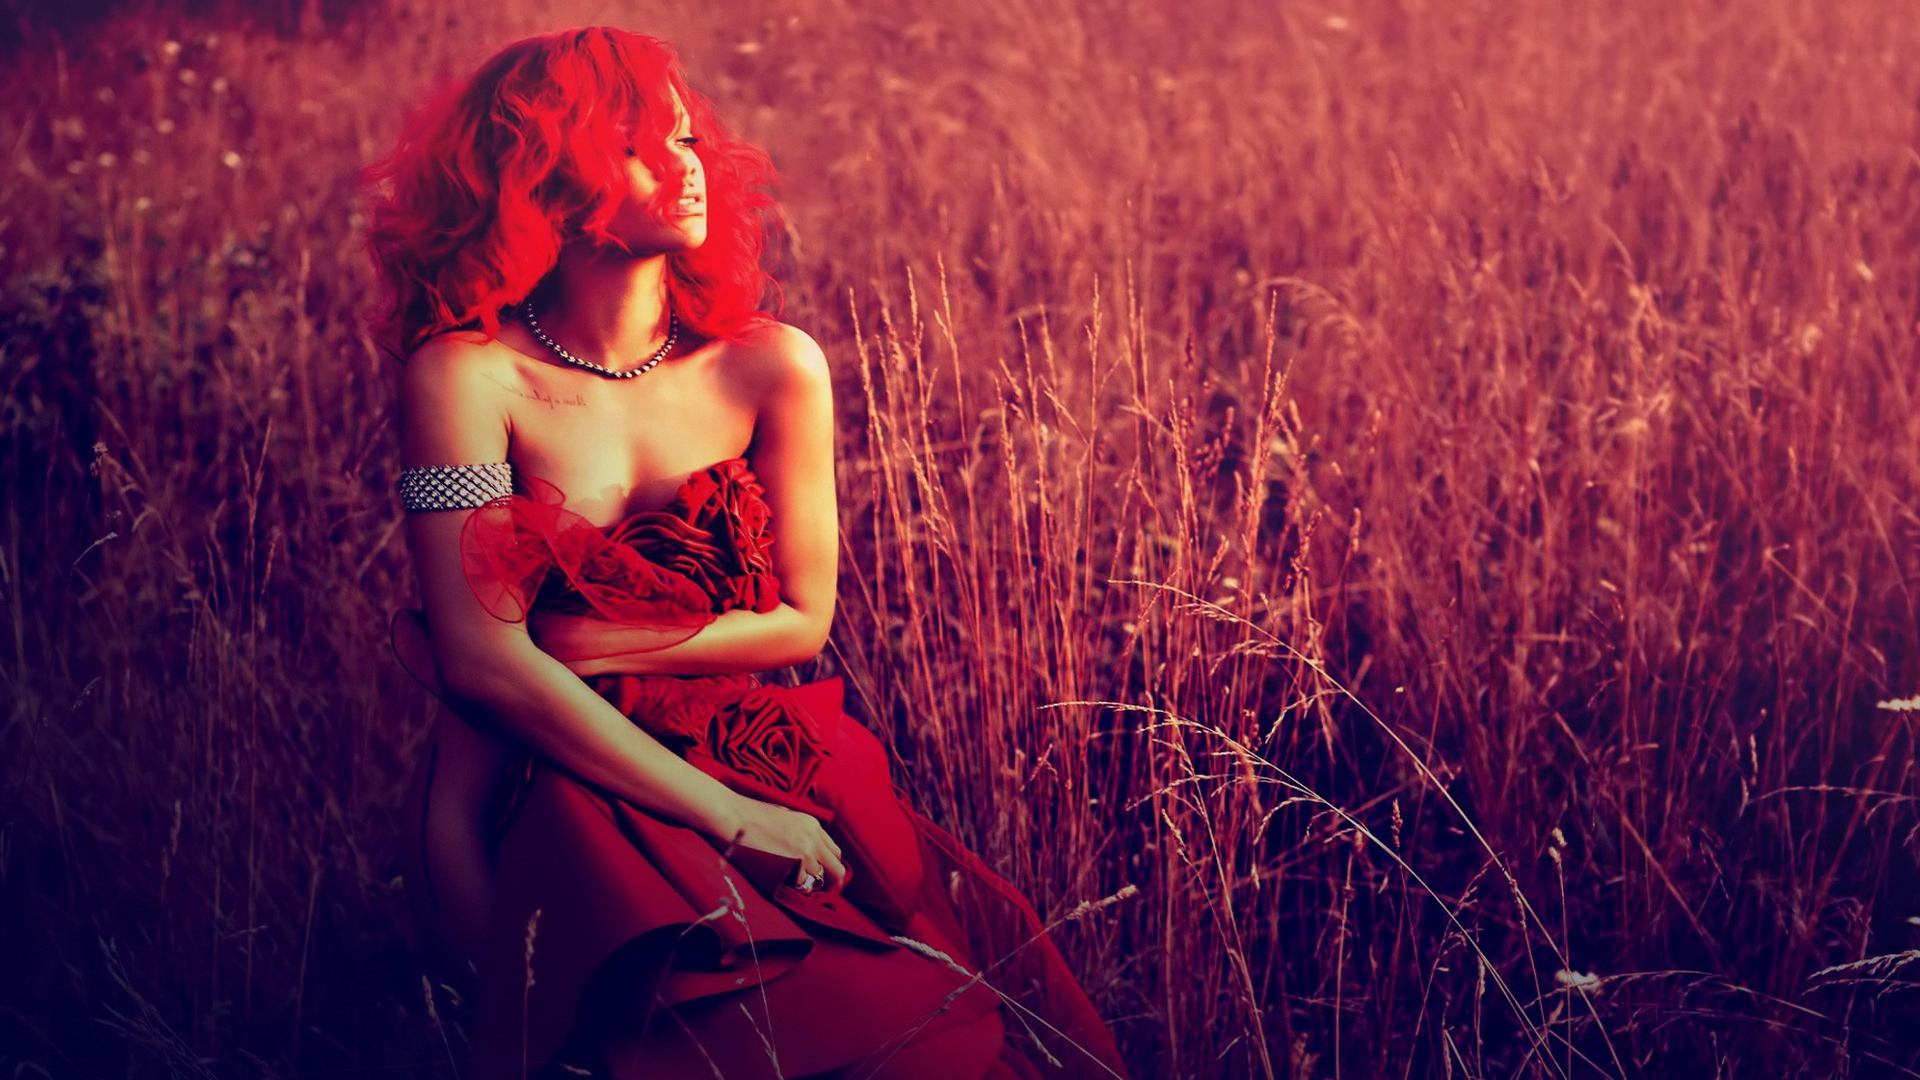 Rihanna Full HD Wallpaper 1080p Photo